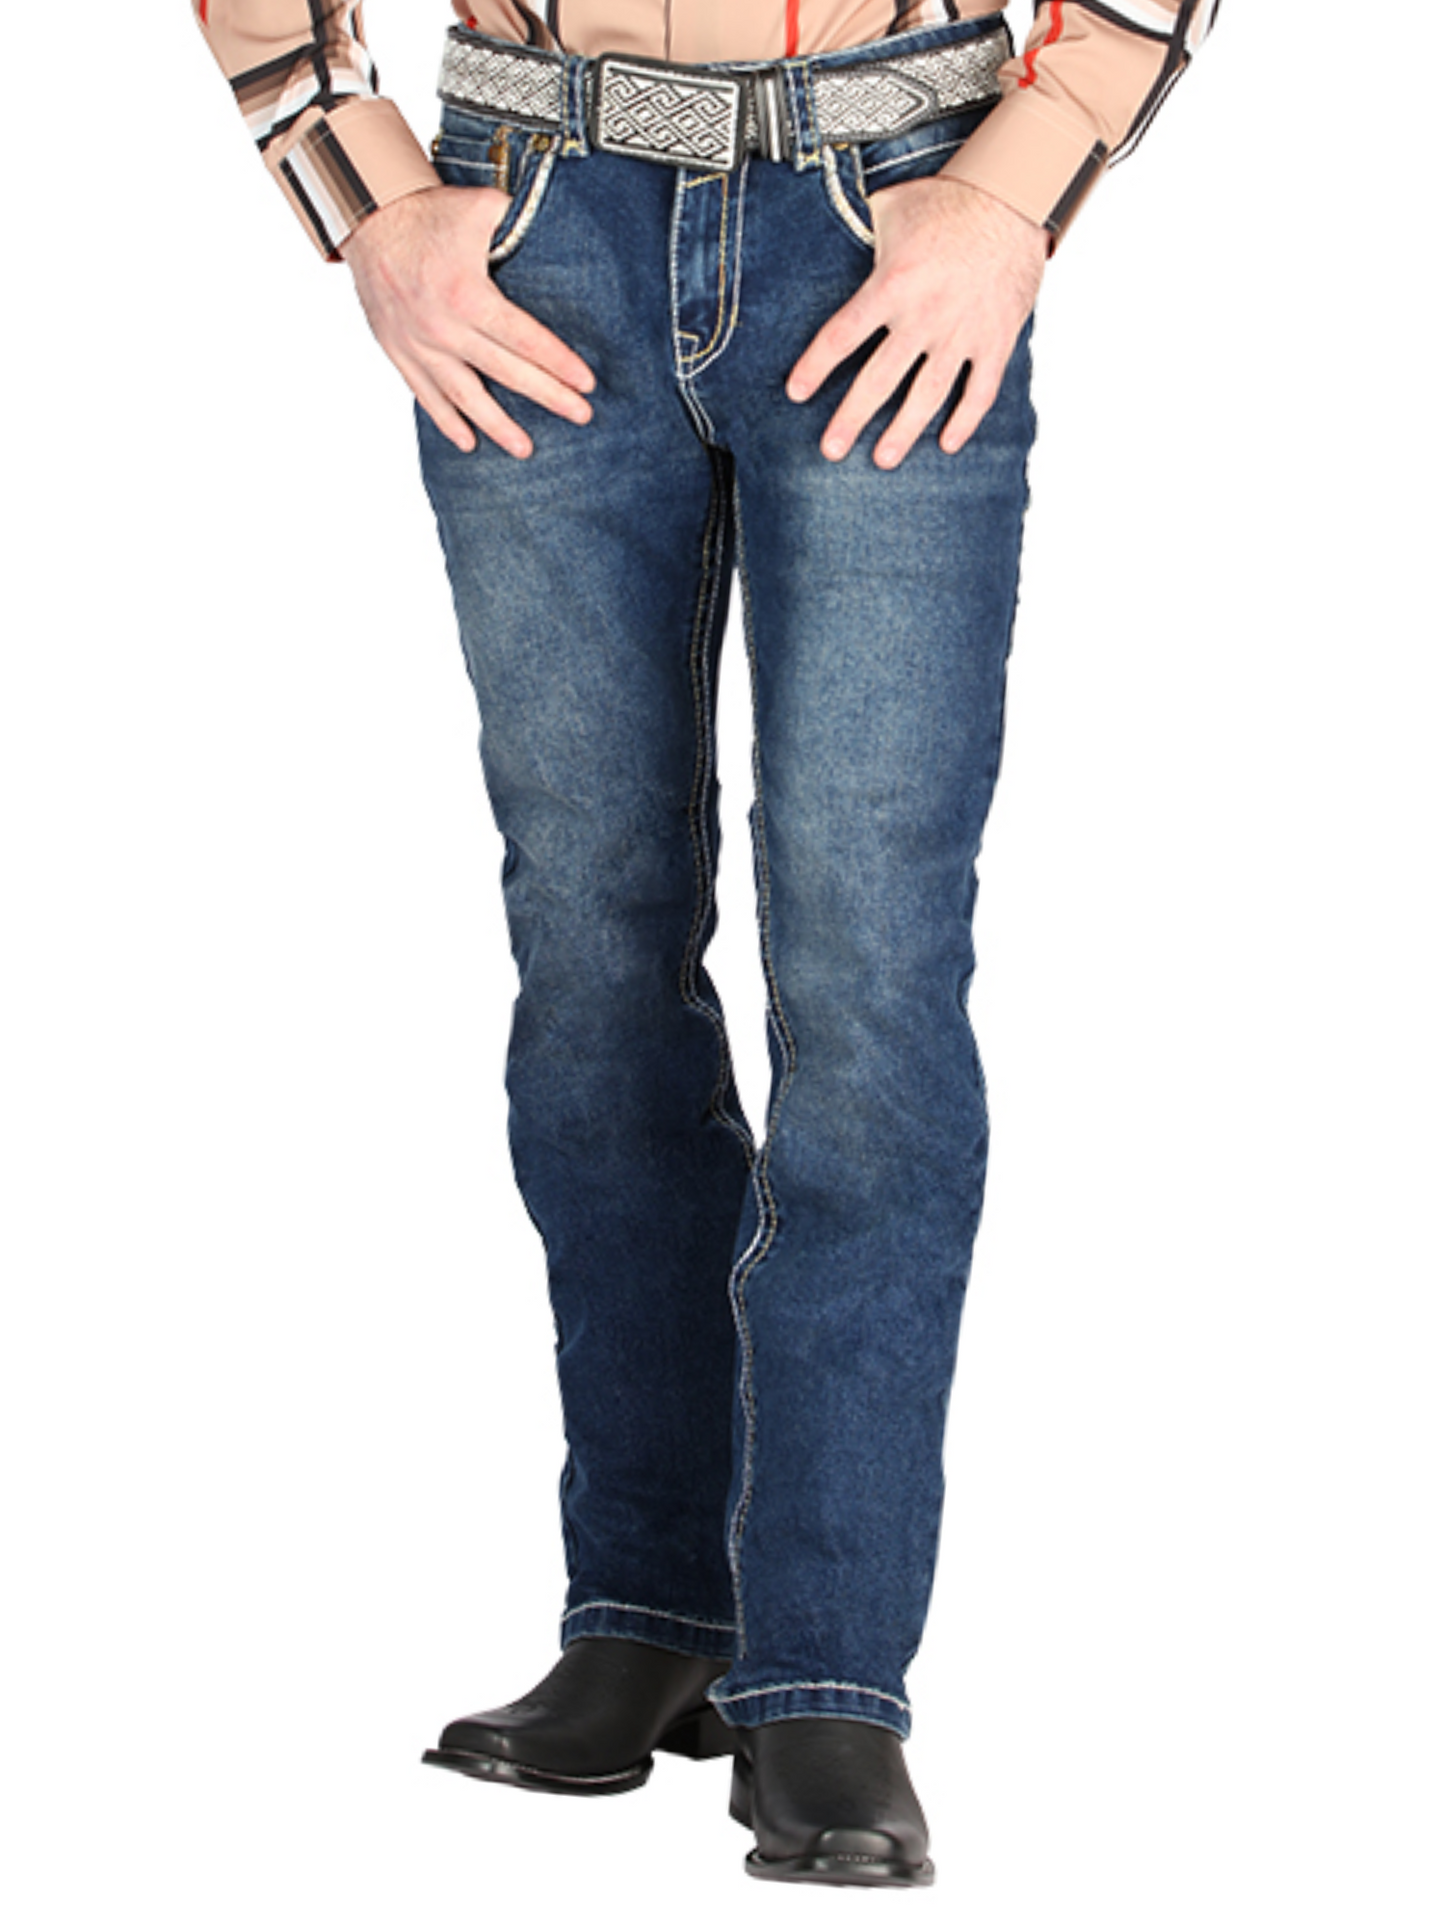 Pantalon Vaquero de Mezclilla Boot Cut Azul Oscuro para Hombre 'Centenario' - ID: 44838 Denim Jeans Centenario 